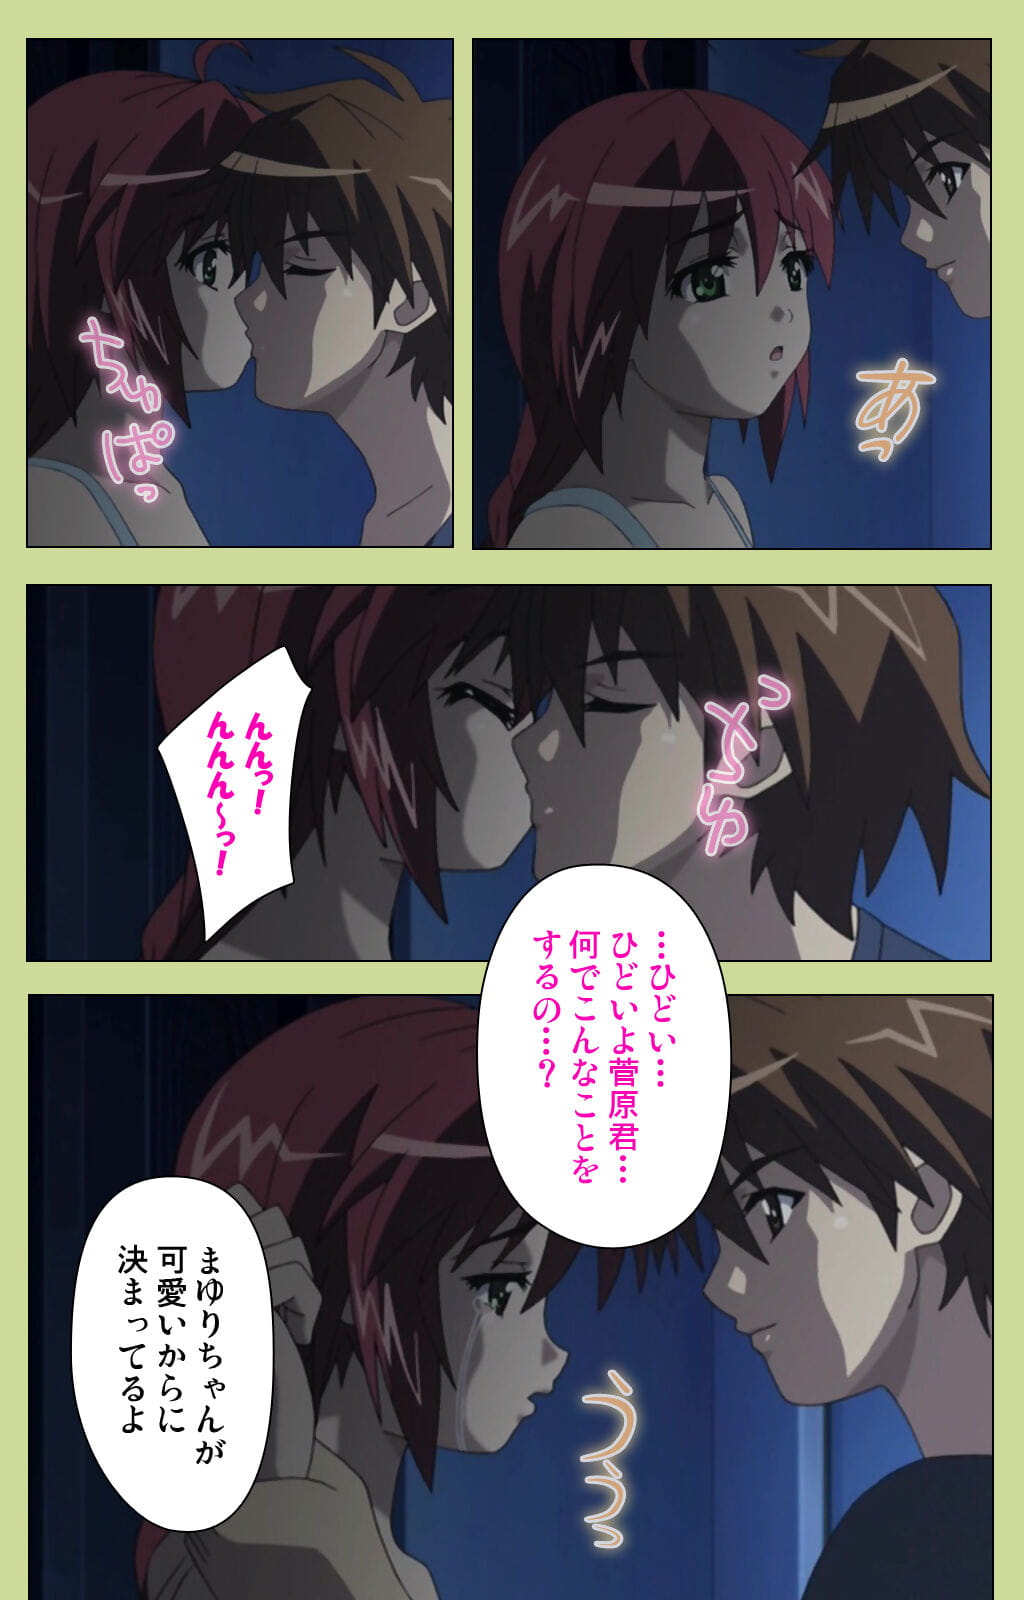 lune :हास्य: पूरा रंग seijin प्रतिबंध समलिंगी स्त्रियां gakuen विशेष पूरा प्रतिबंध